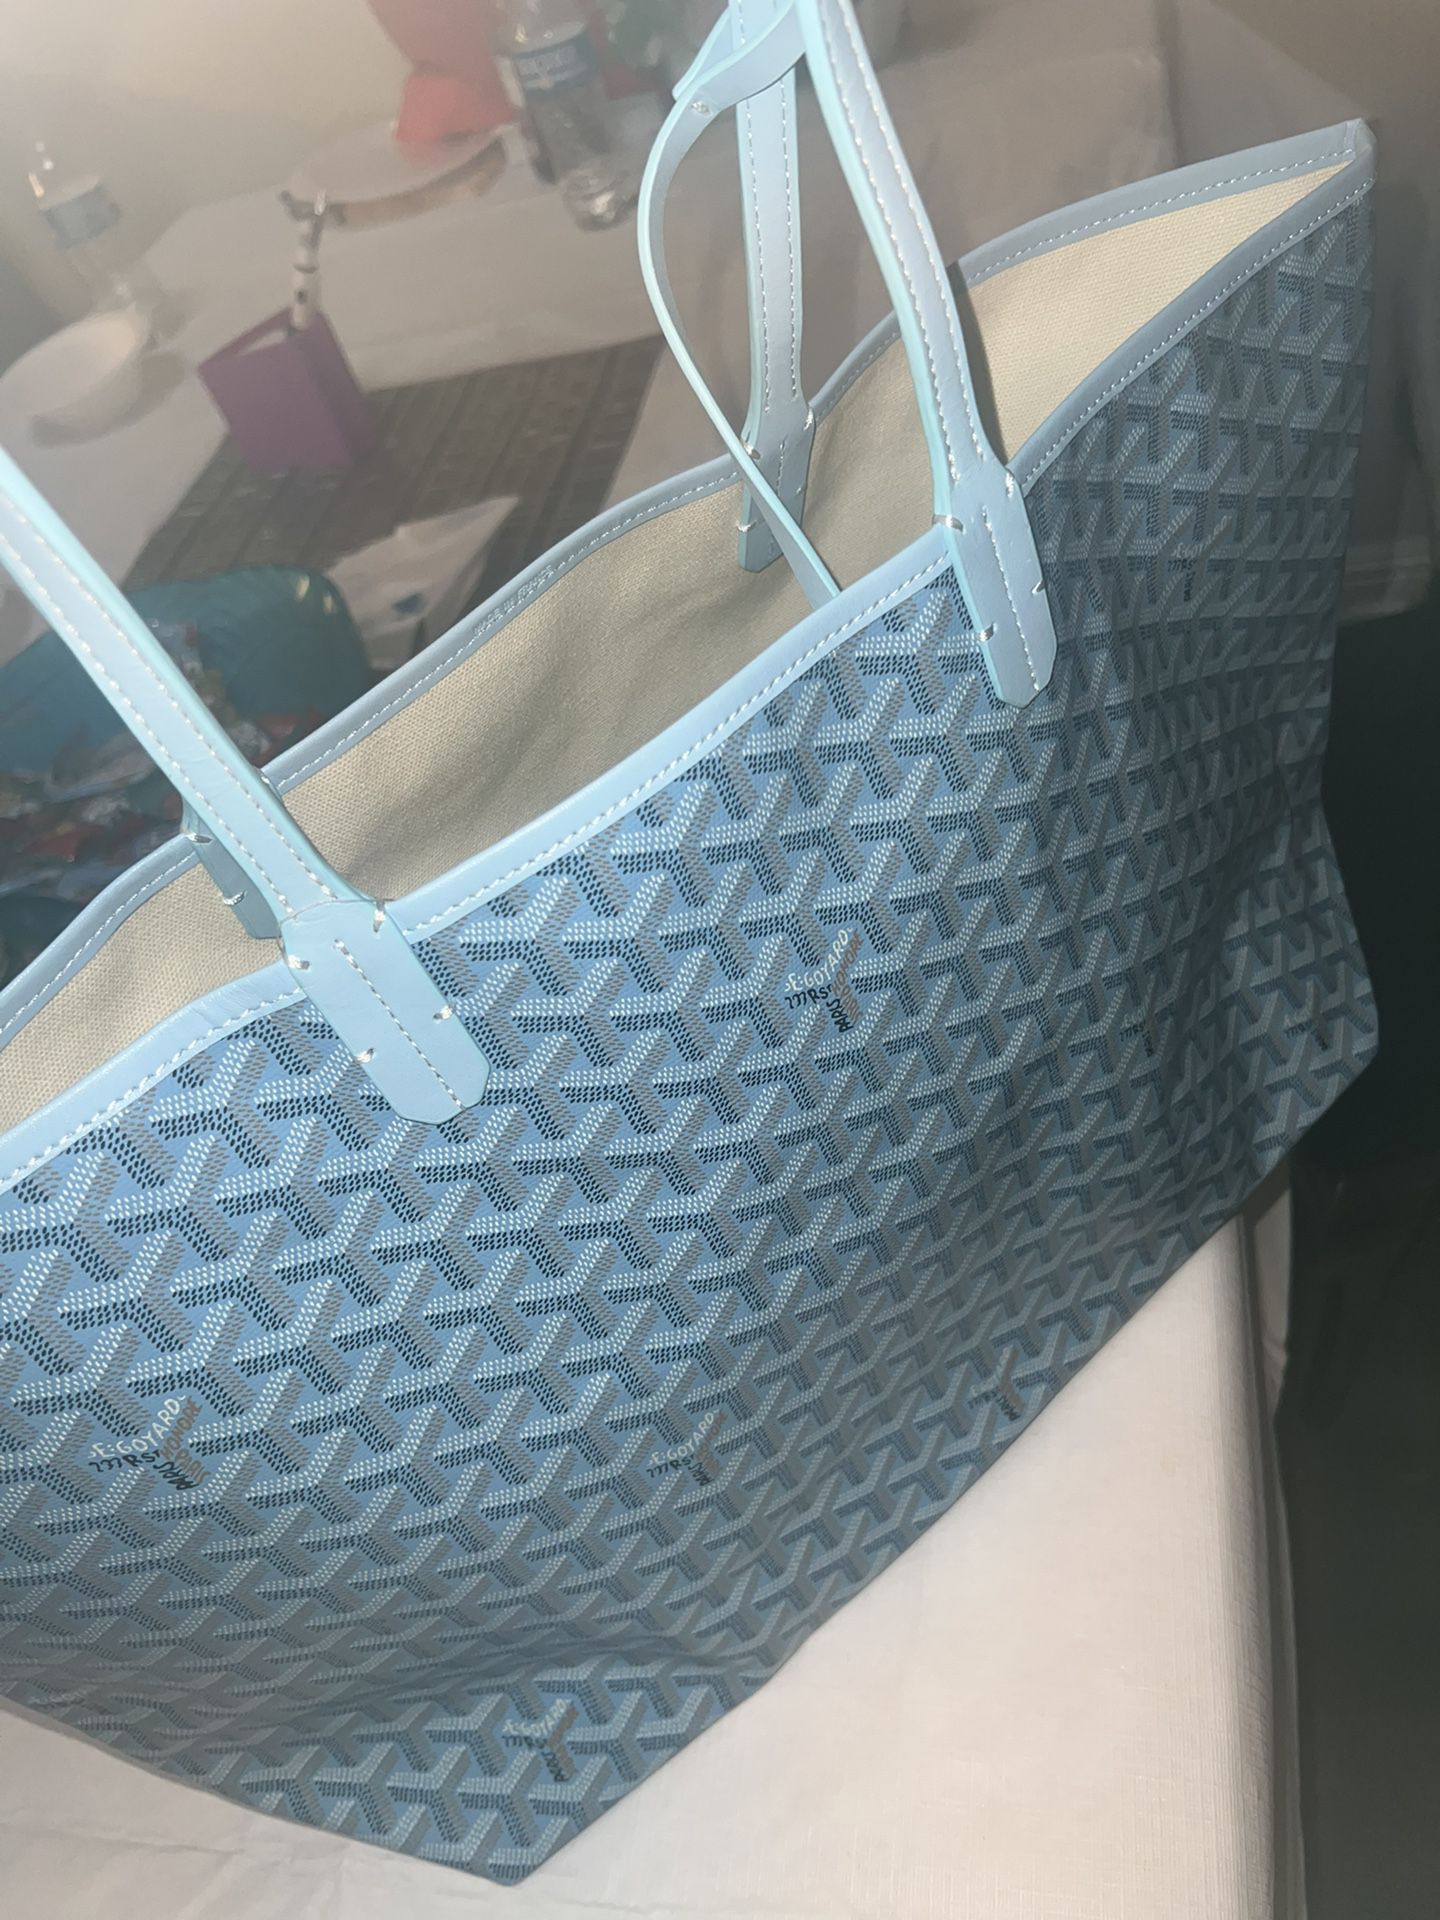 Goyard Duffle Bag for Sale in Phoenix, AZ - OfferUp